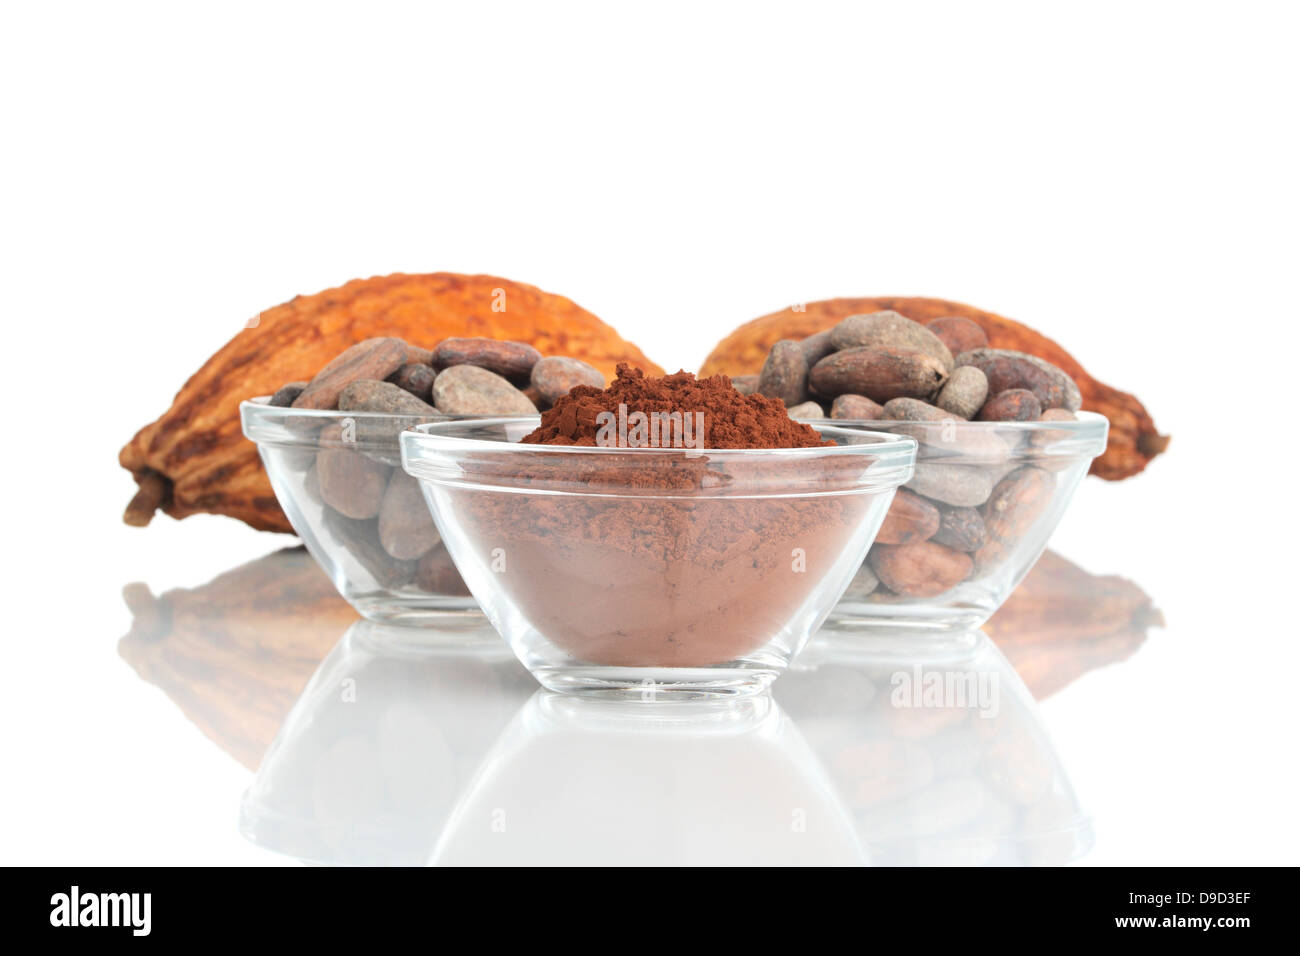 Les fèves de cacao et poudre de cacao Banque D'Images